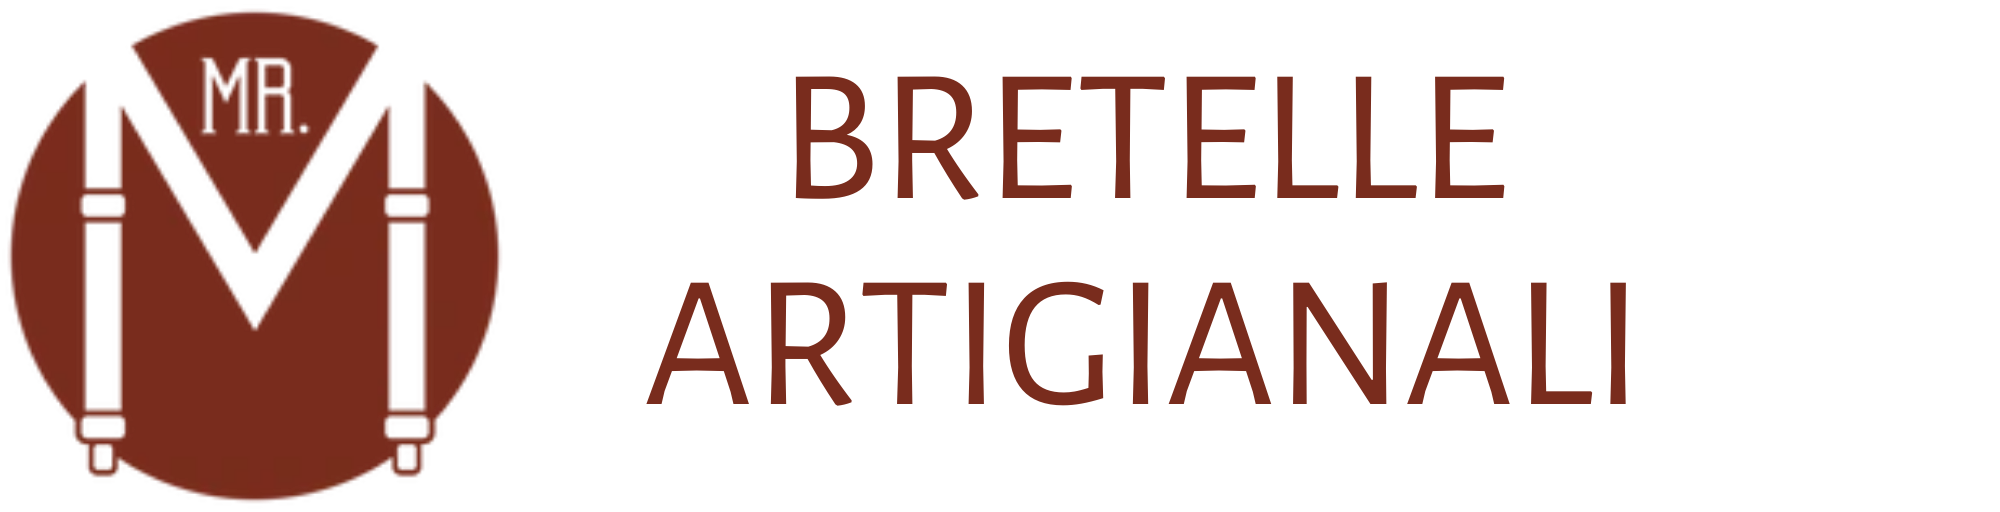 MR. M Bretelle Artigianali